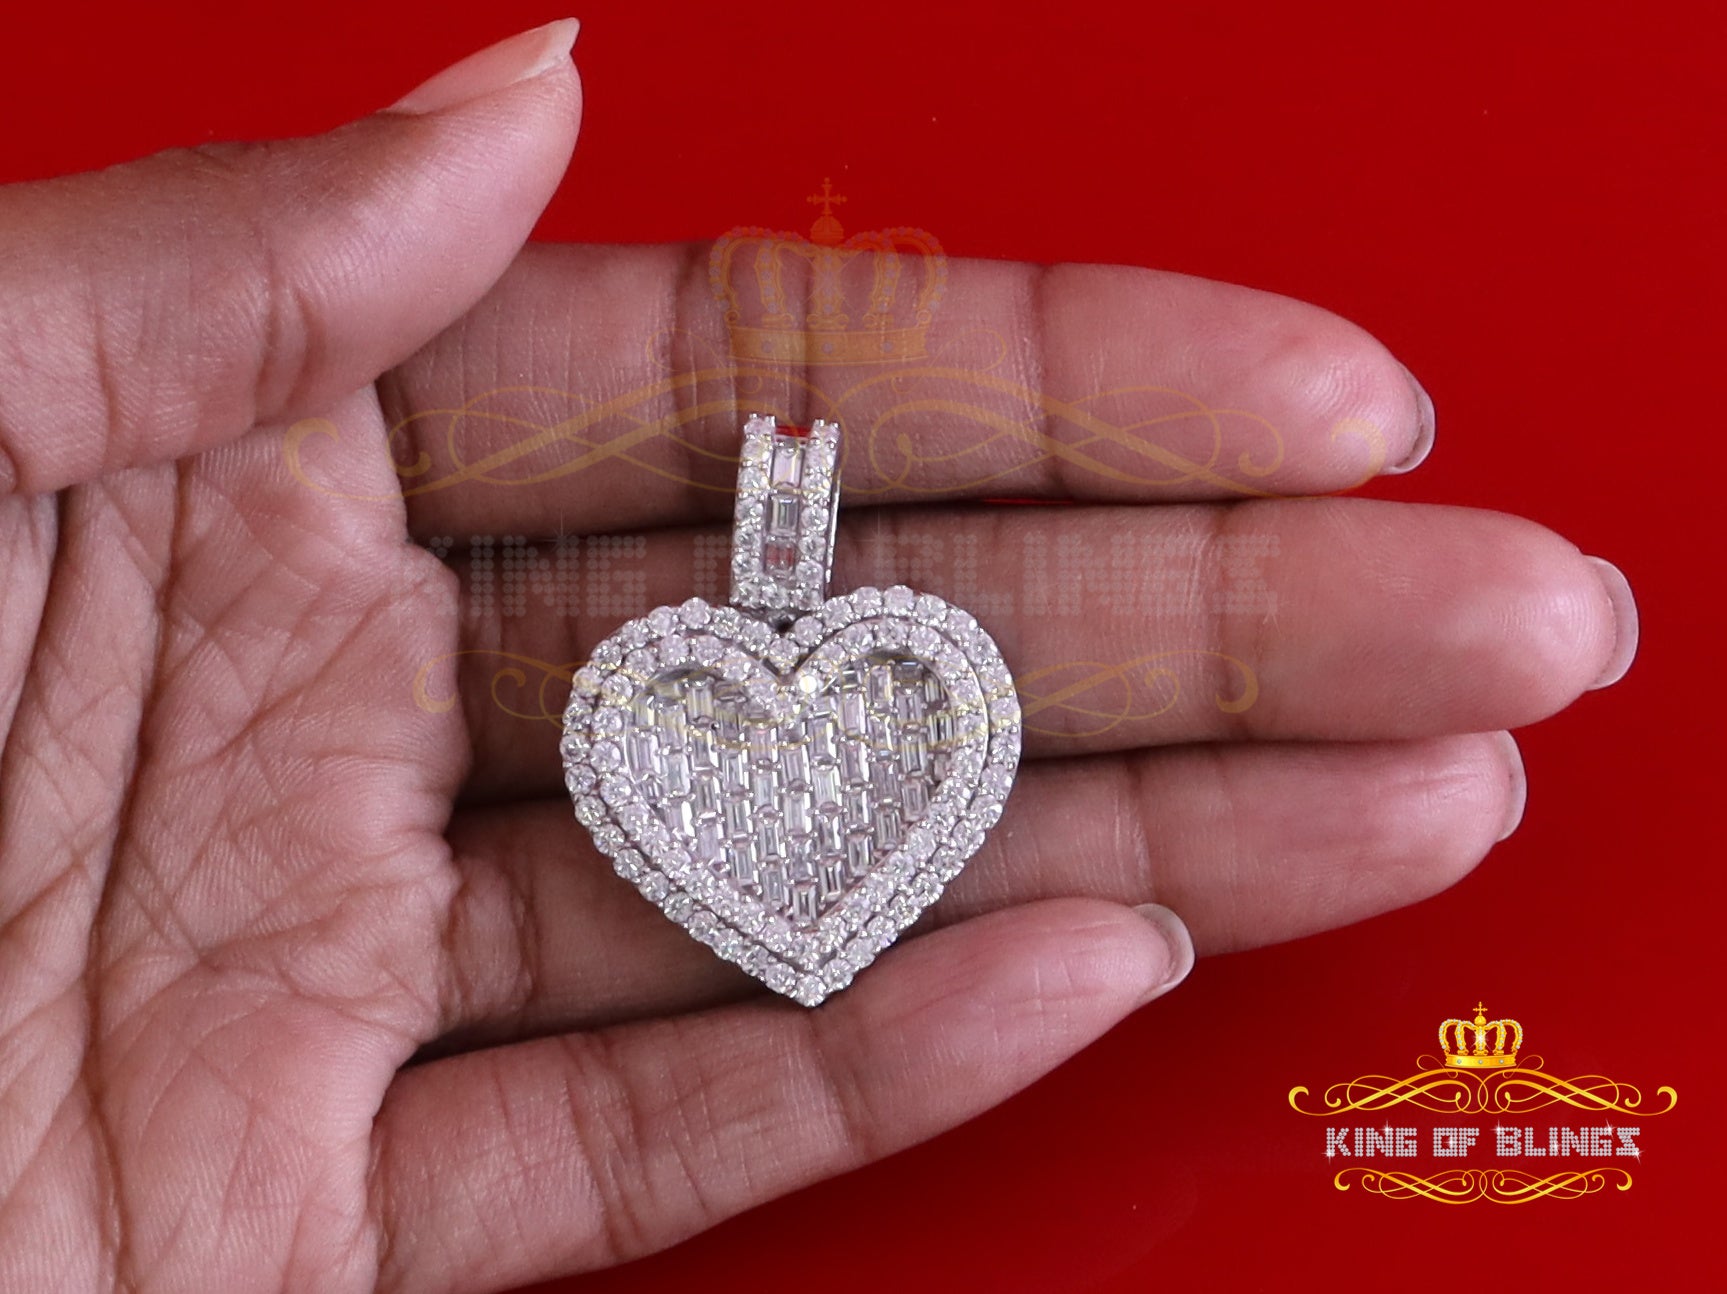 King Of Bling's 925 Sterling White Silver Heart Pendant 7.50ct VVS D Clr Moissanite for He/She. KING OF BLINGS